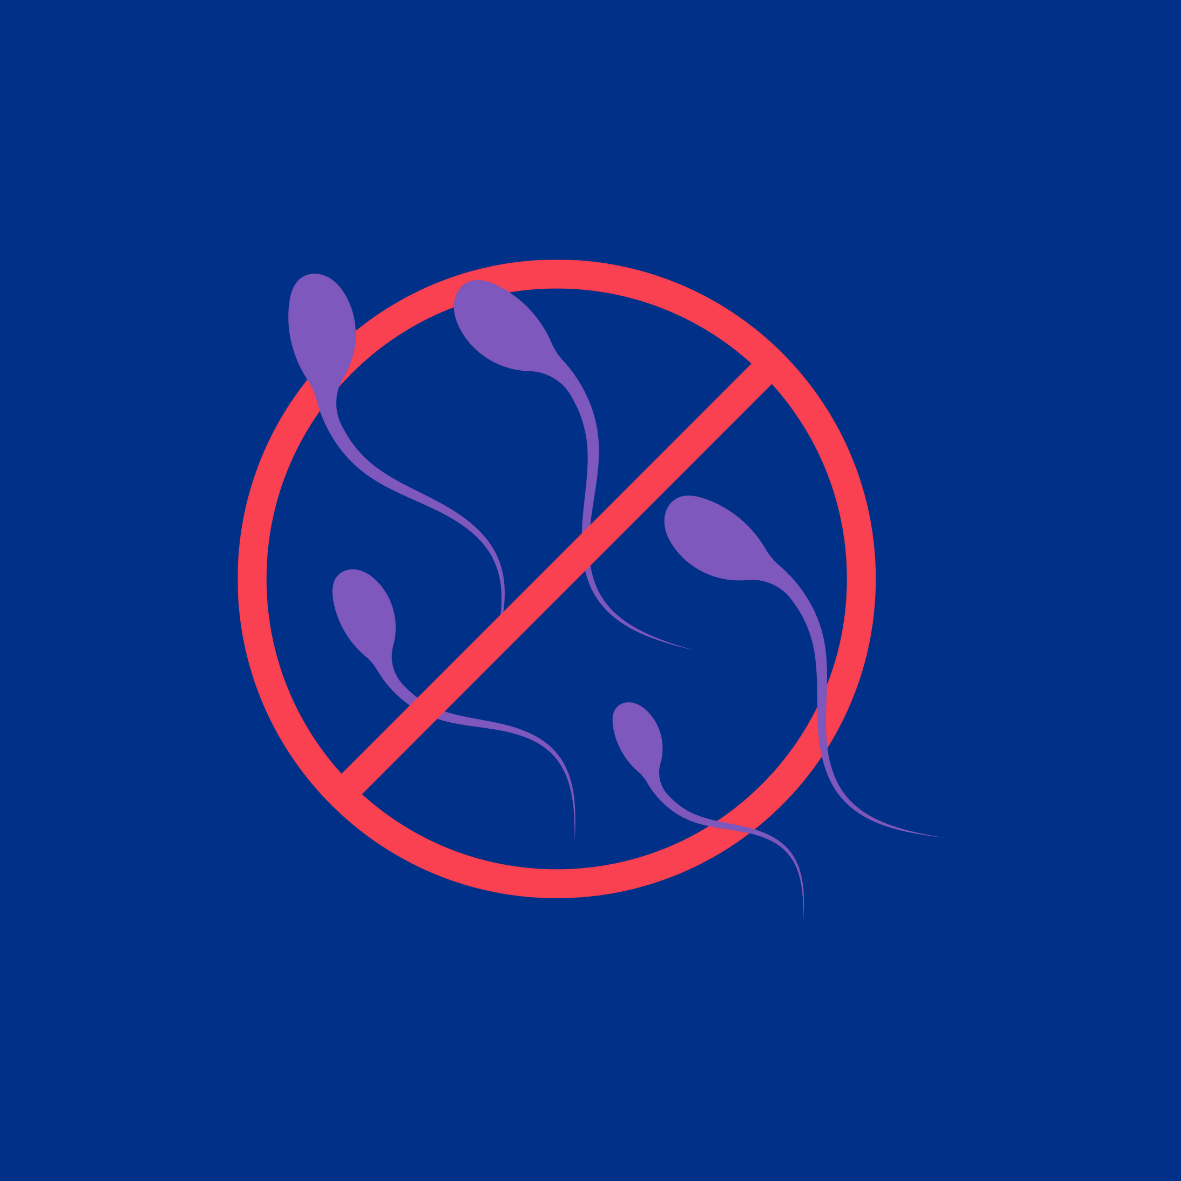 Image of No Entry Symbol and Sperm